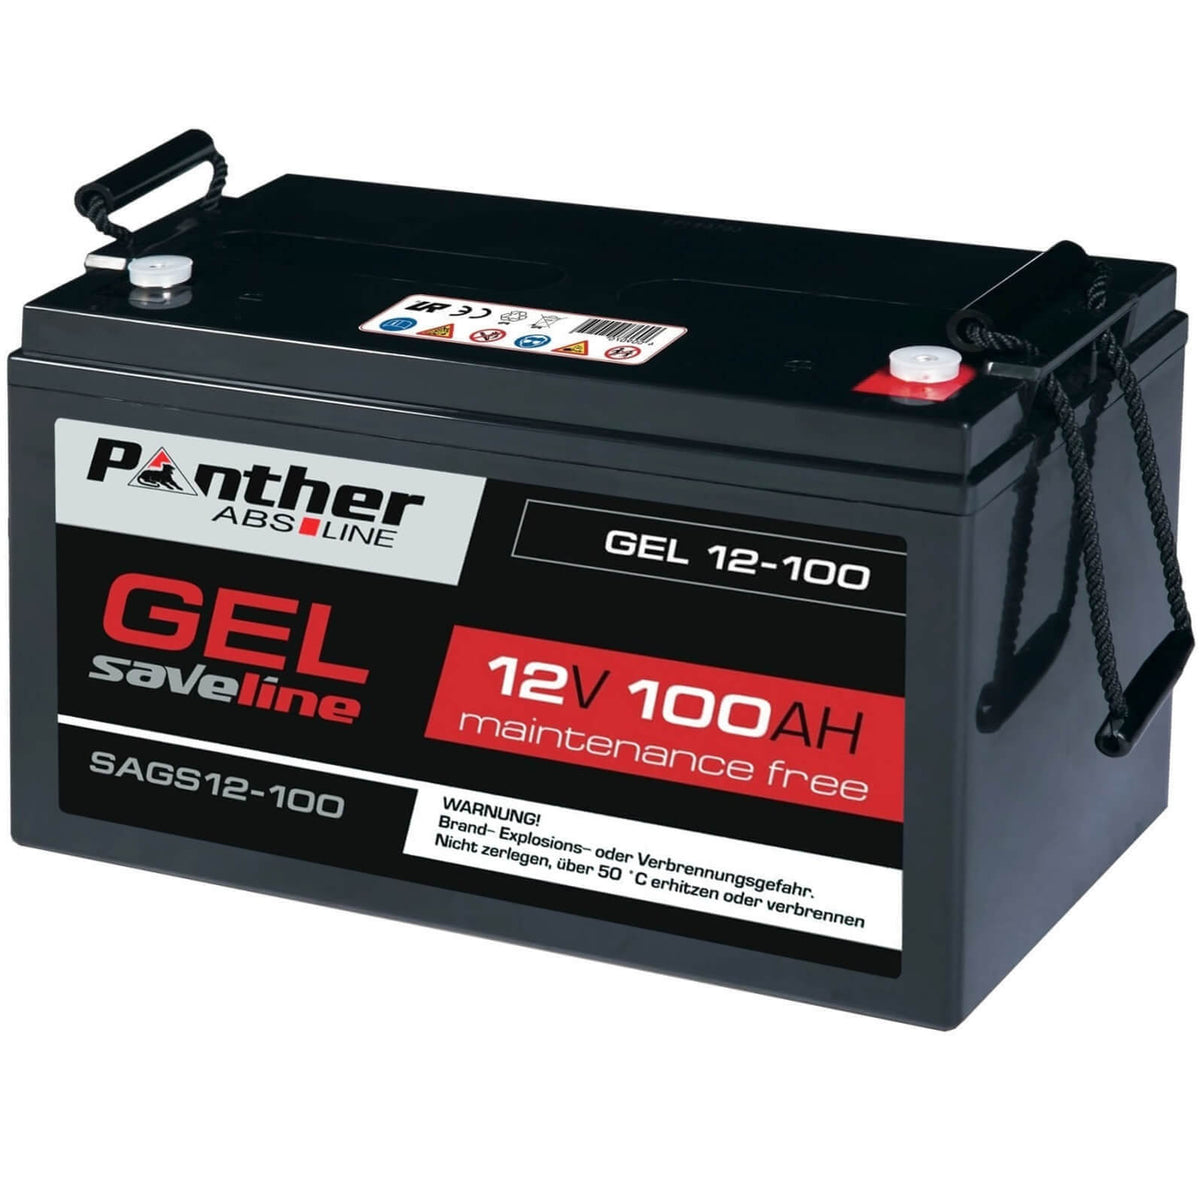 Panther GEL Bleiakku 12V 100Ah saveline Batterie